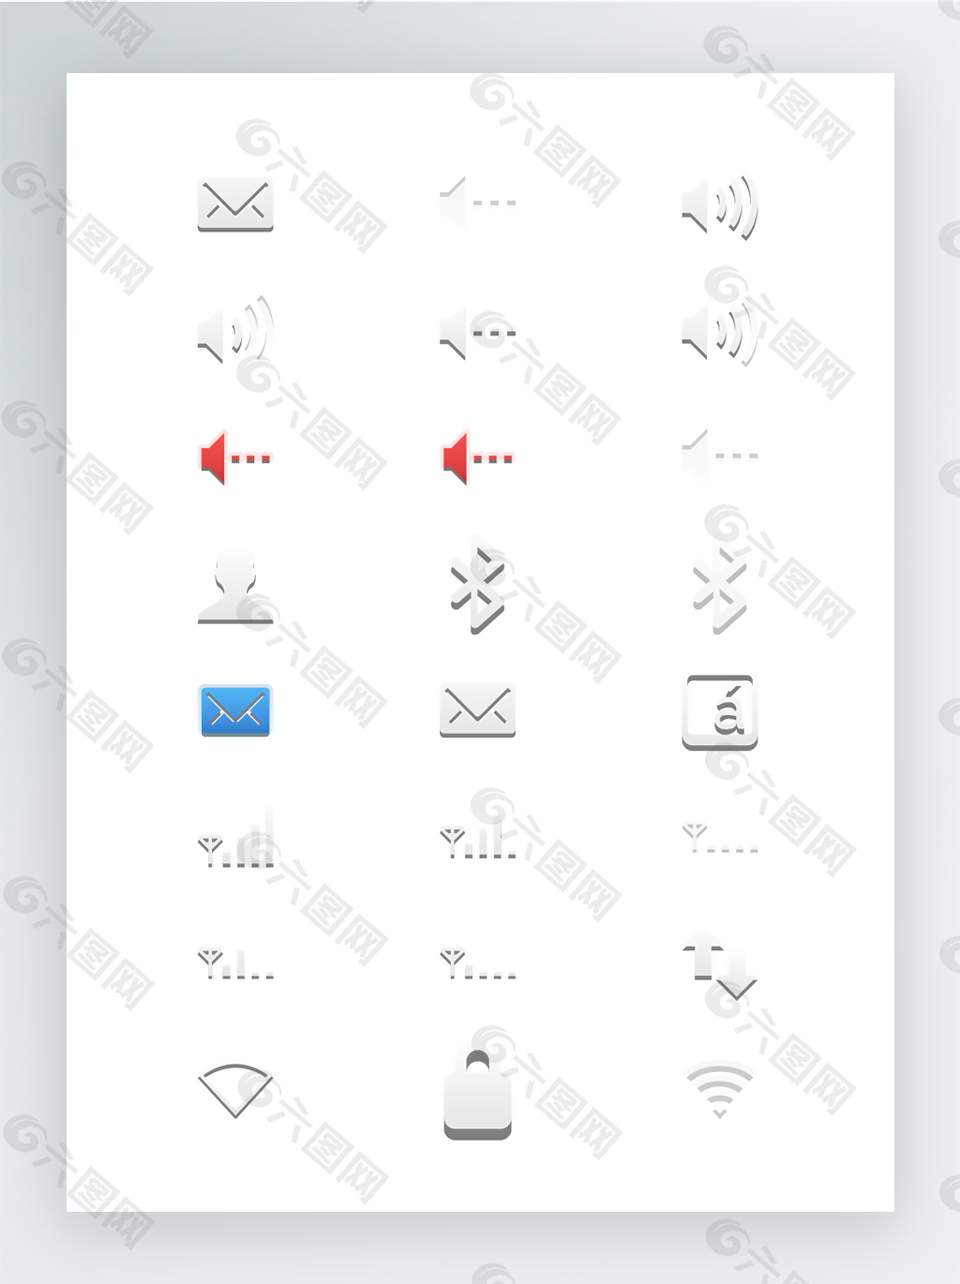 彩色SVG矢量格式图标集-面板常用小图标